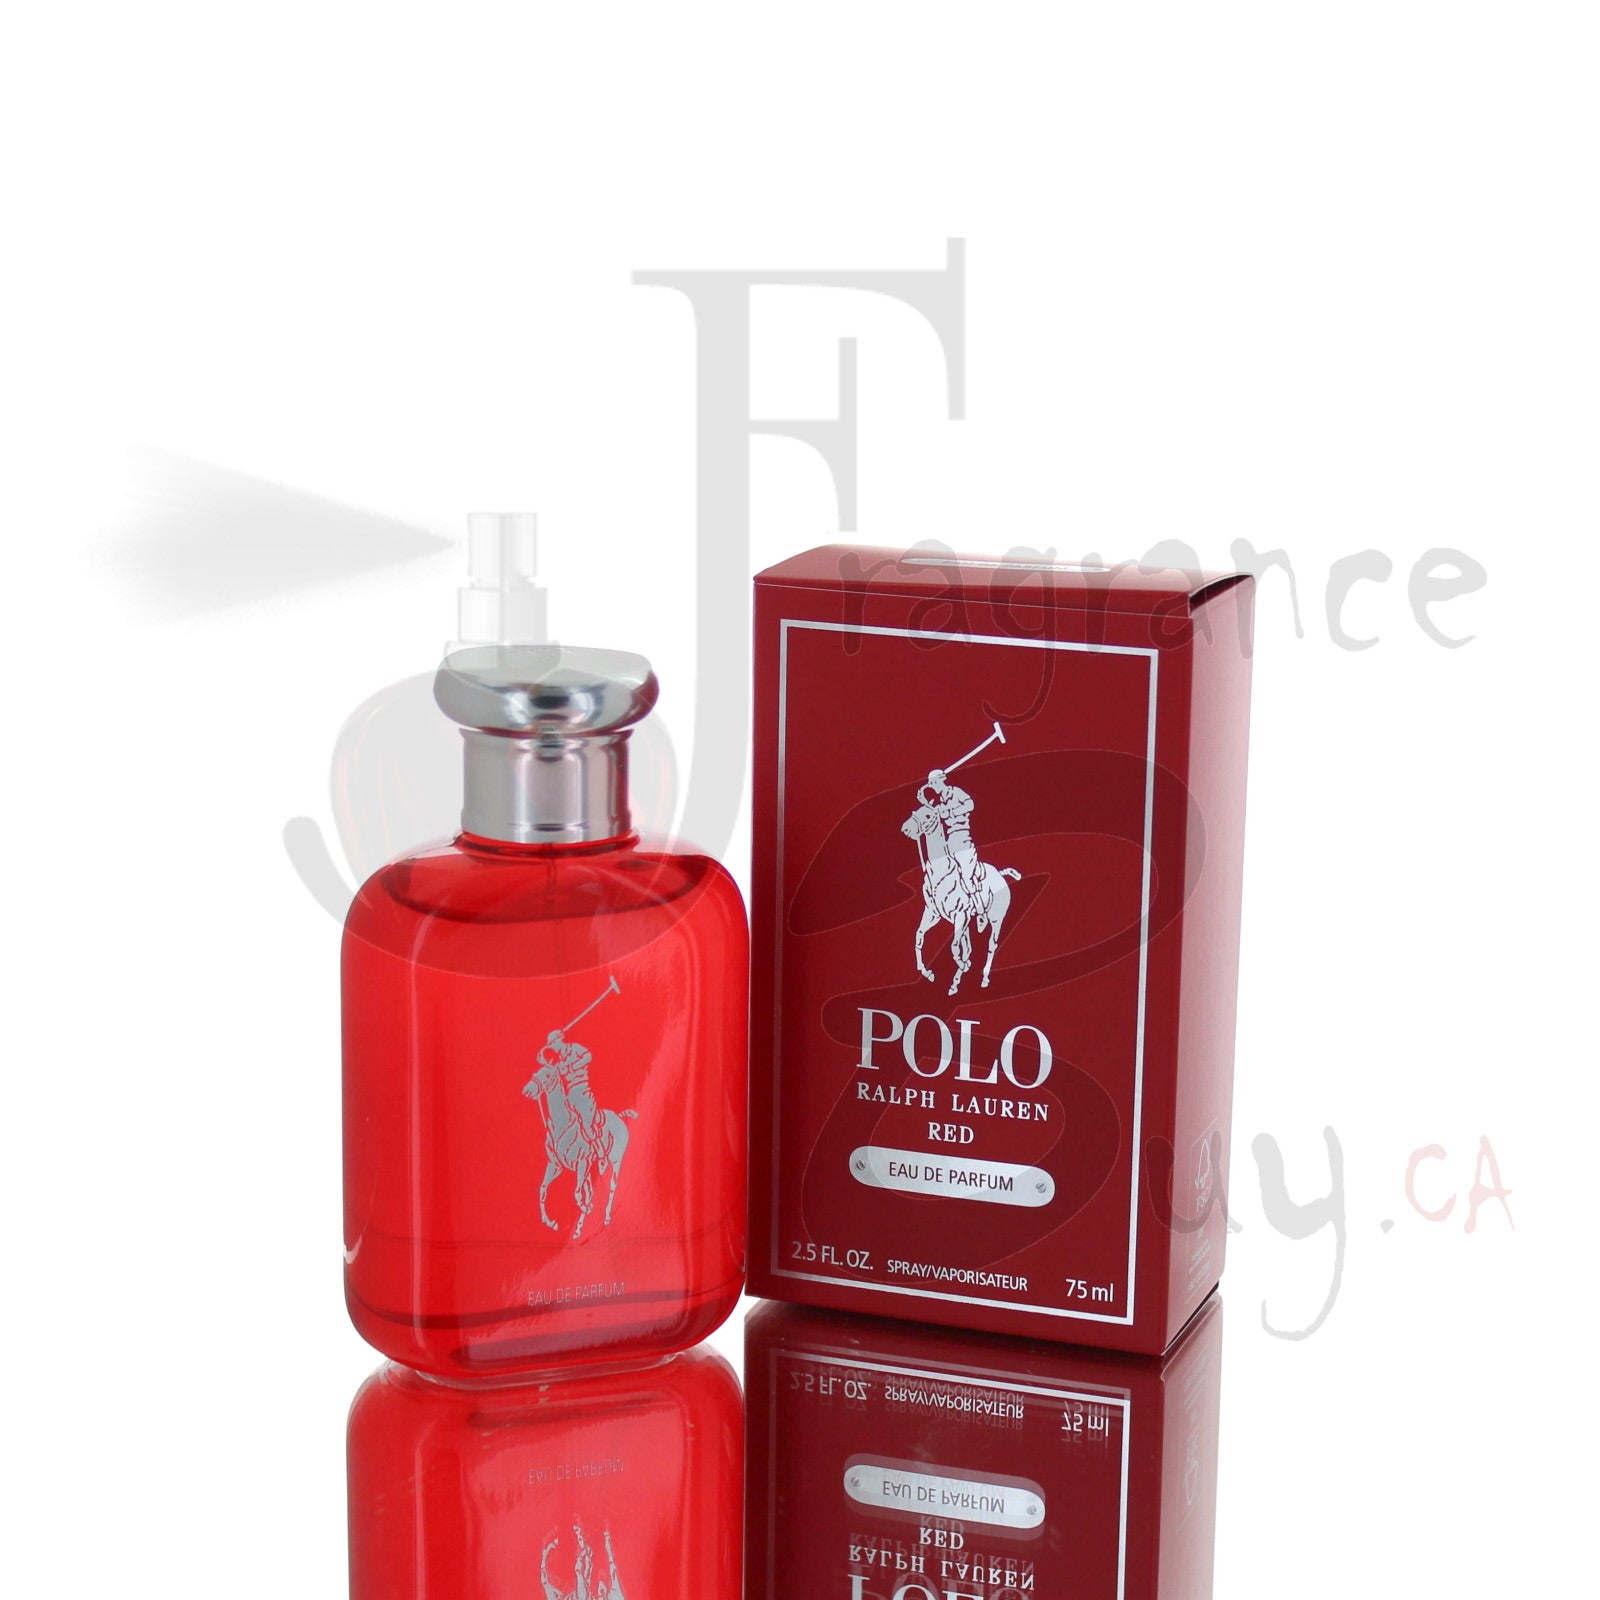 polo red eau de parfum 2020